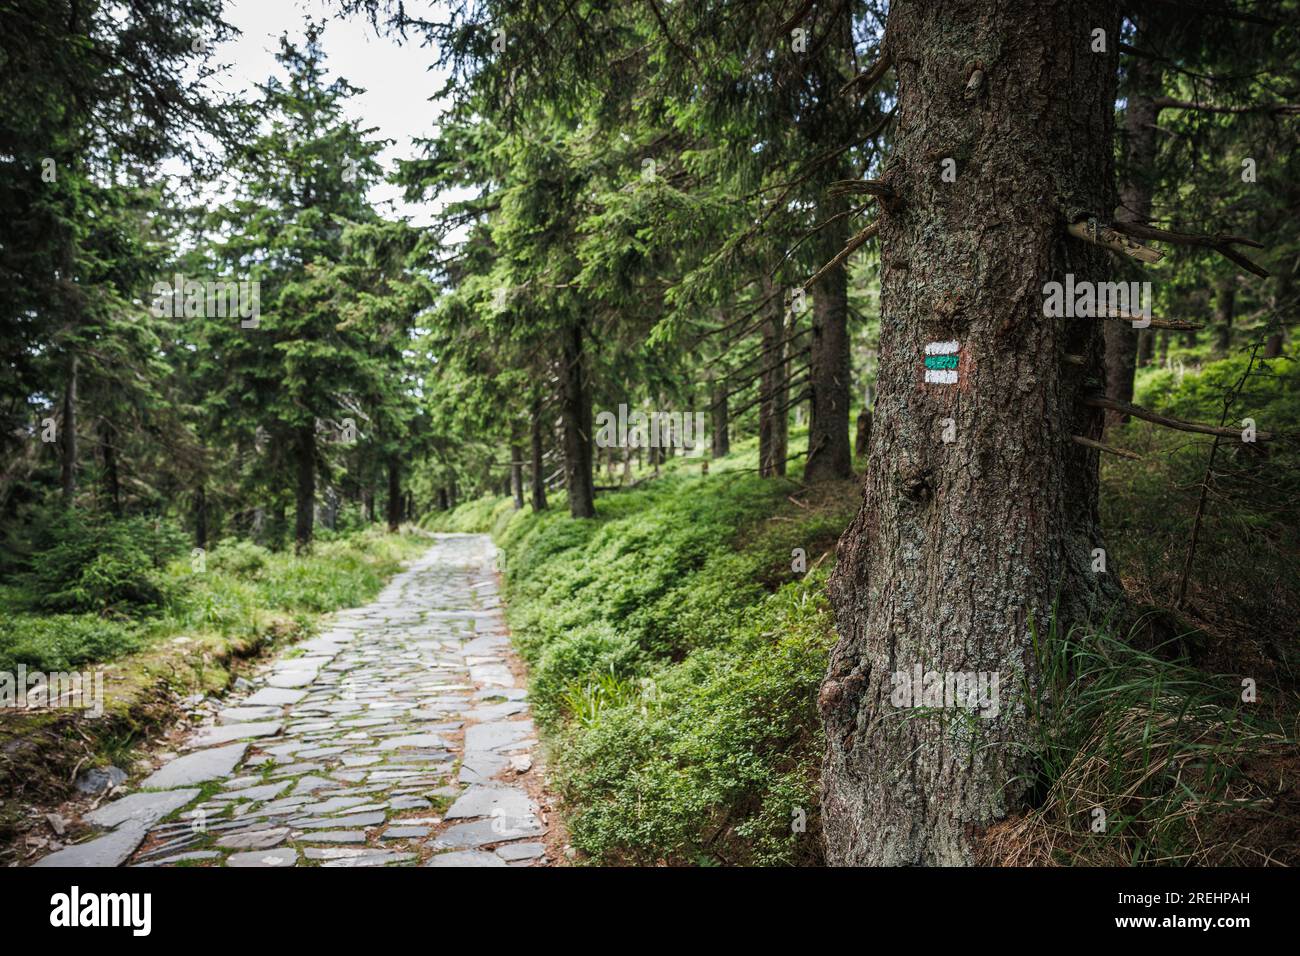 Marque de sentier de randonnée ou signe sur le tronc d'arbre à côté du sentier de montagne en pierre dans la forêt. Parc naturel Jeseniky montagnes, Tchéquie Banque D'Images